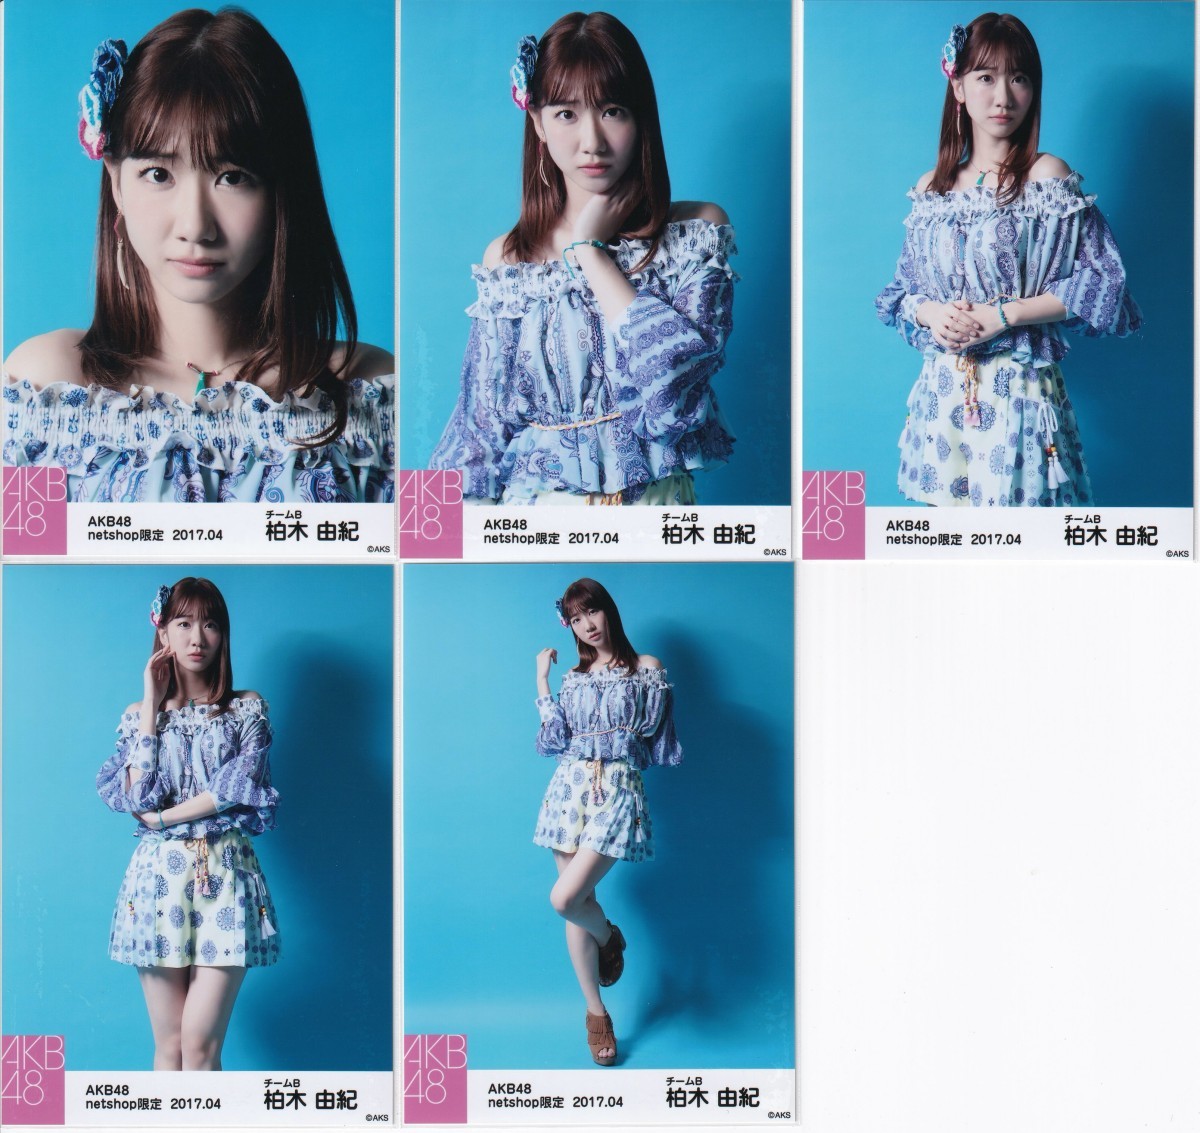 AKB48 Kashiwagi Yuki netshop ограничение 2017.04 индивидуальный life photograph 5 вид comp крыло. нет этнический рисунок костюм 